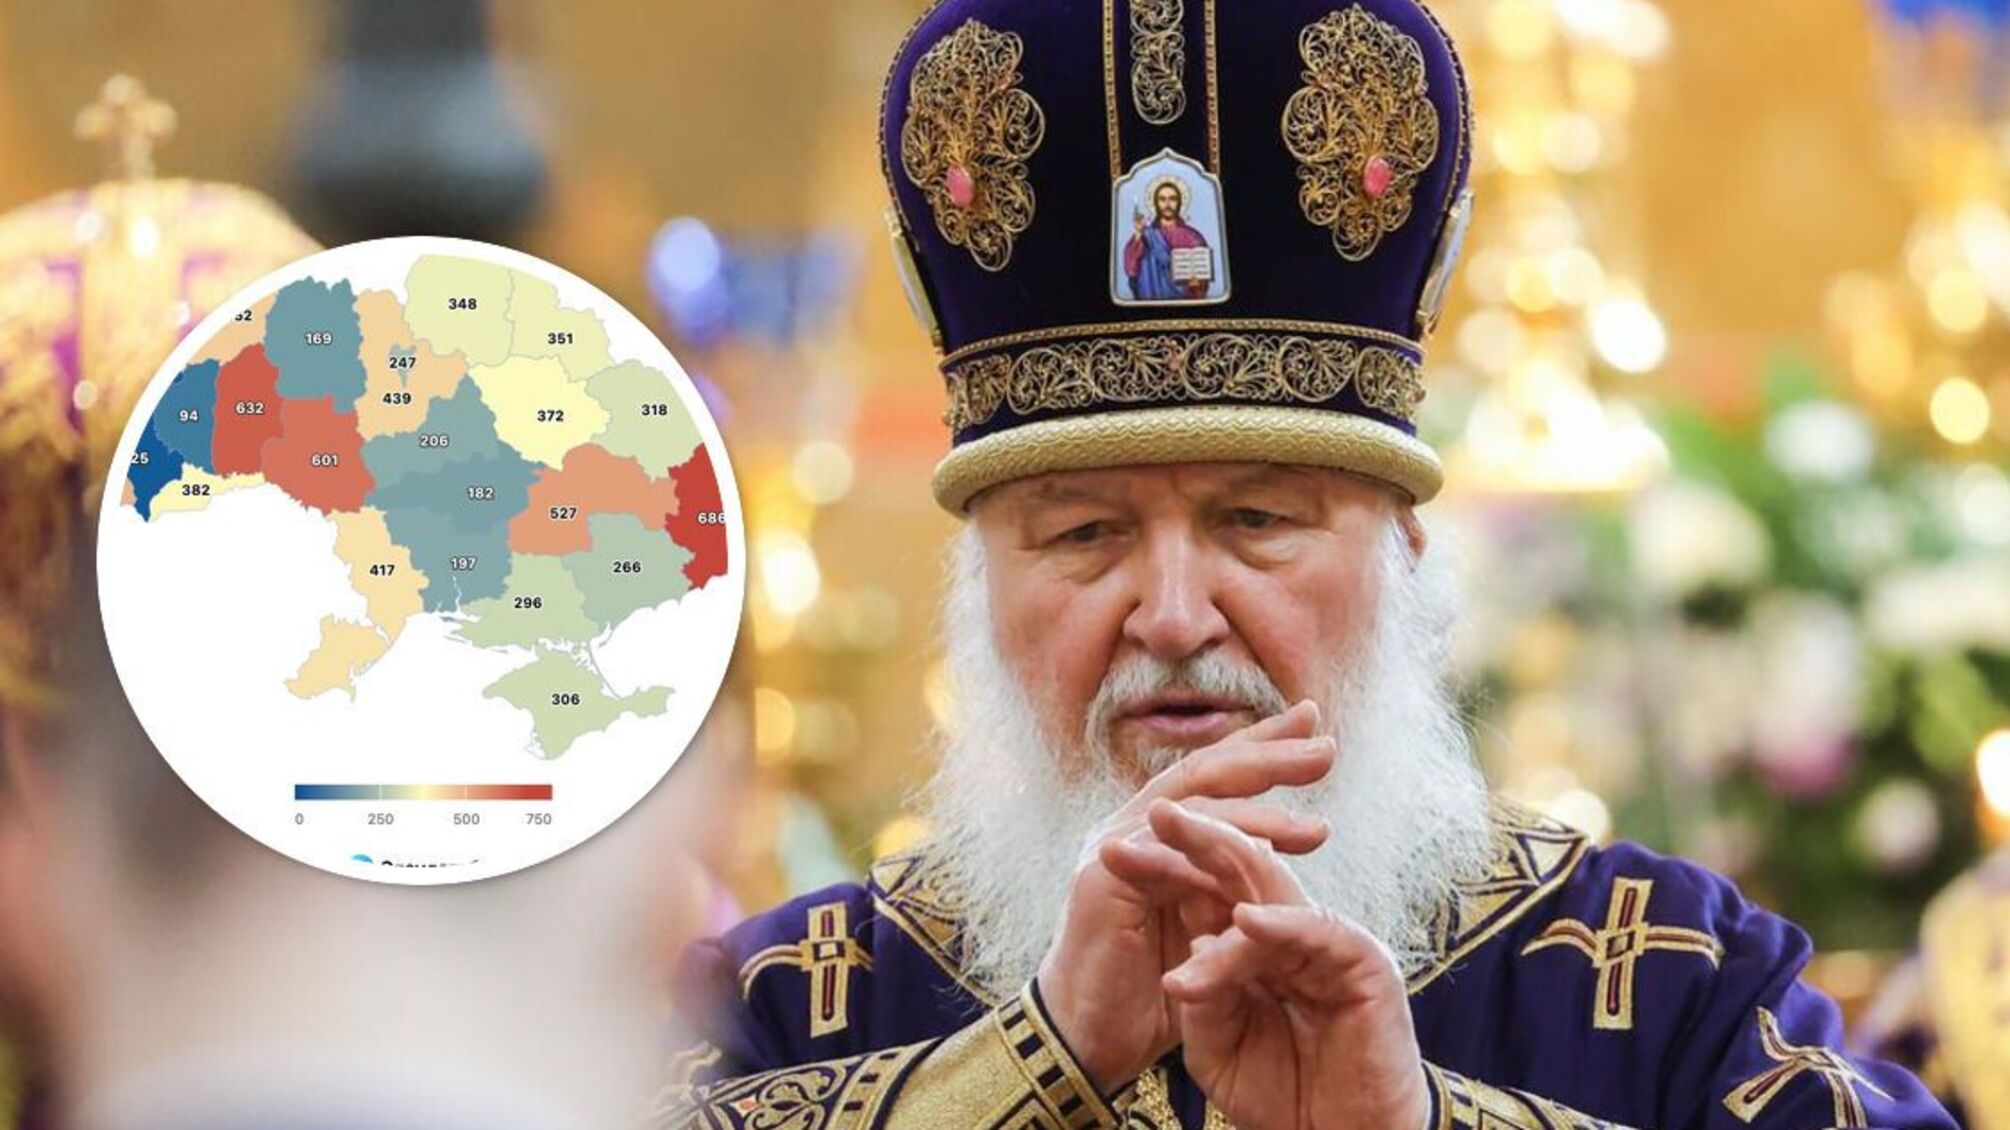 Opendatabot: в Украине действует более 8,5 тысячи 'московских' церквей, больше всего – на Донеччине (инфографика)